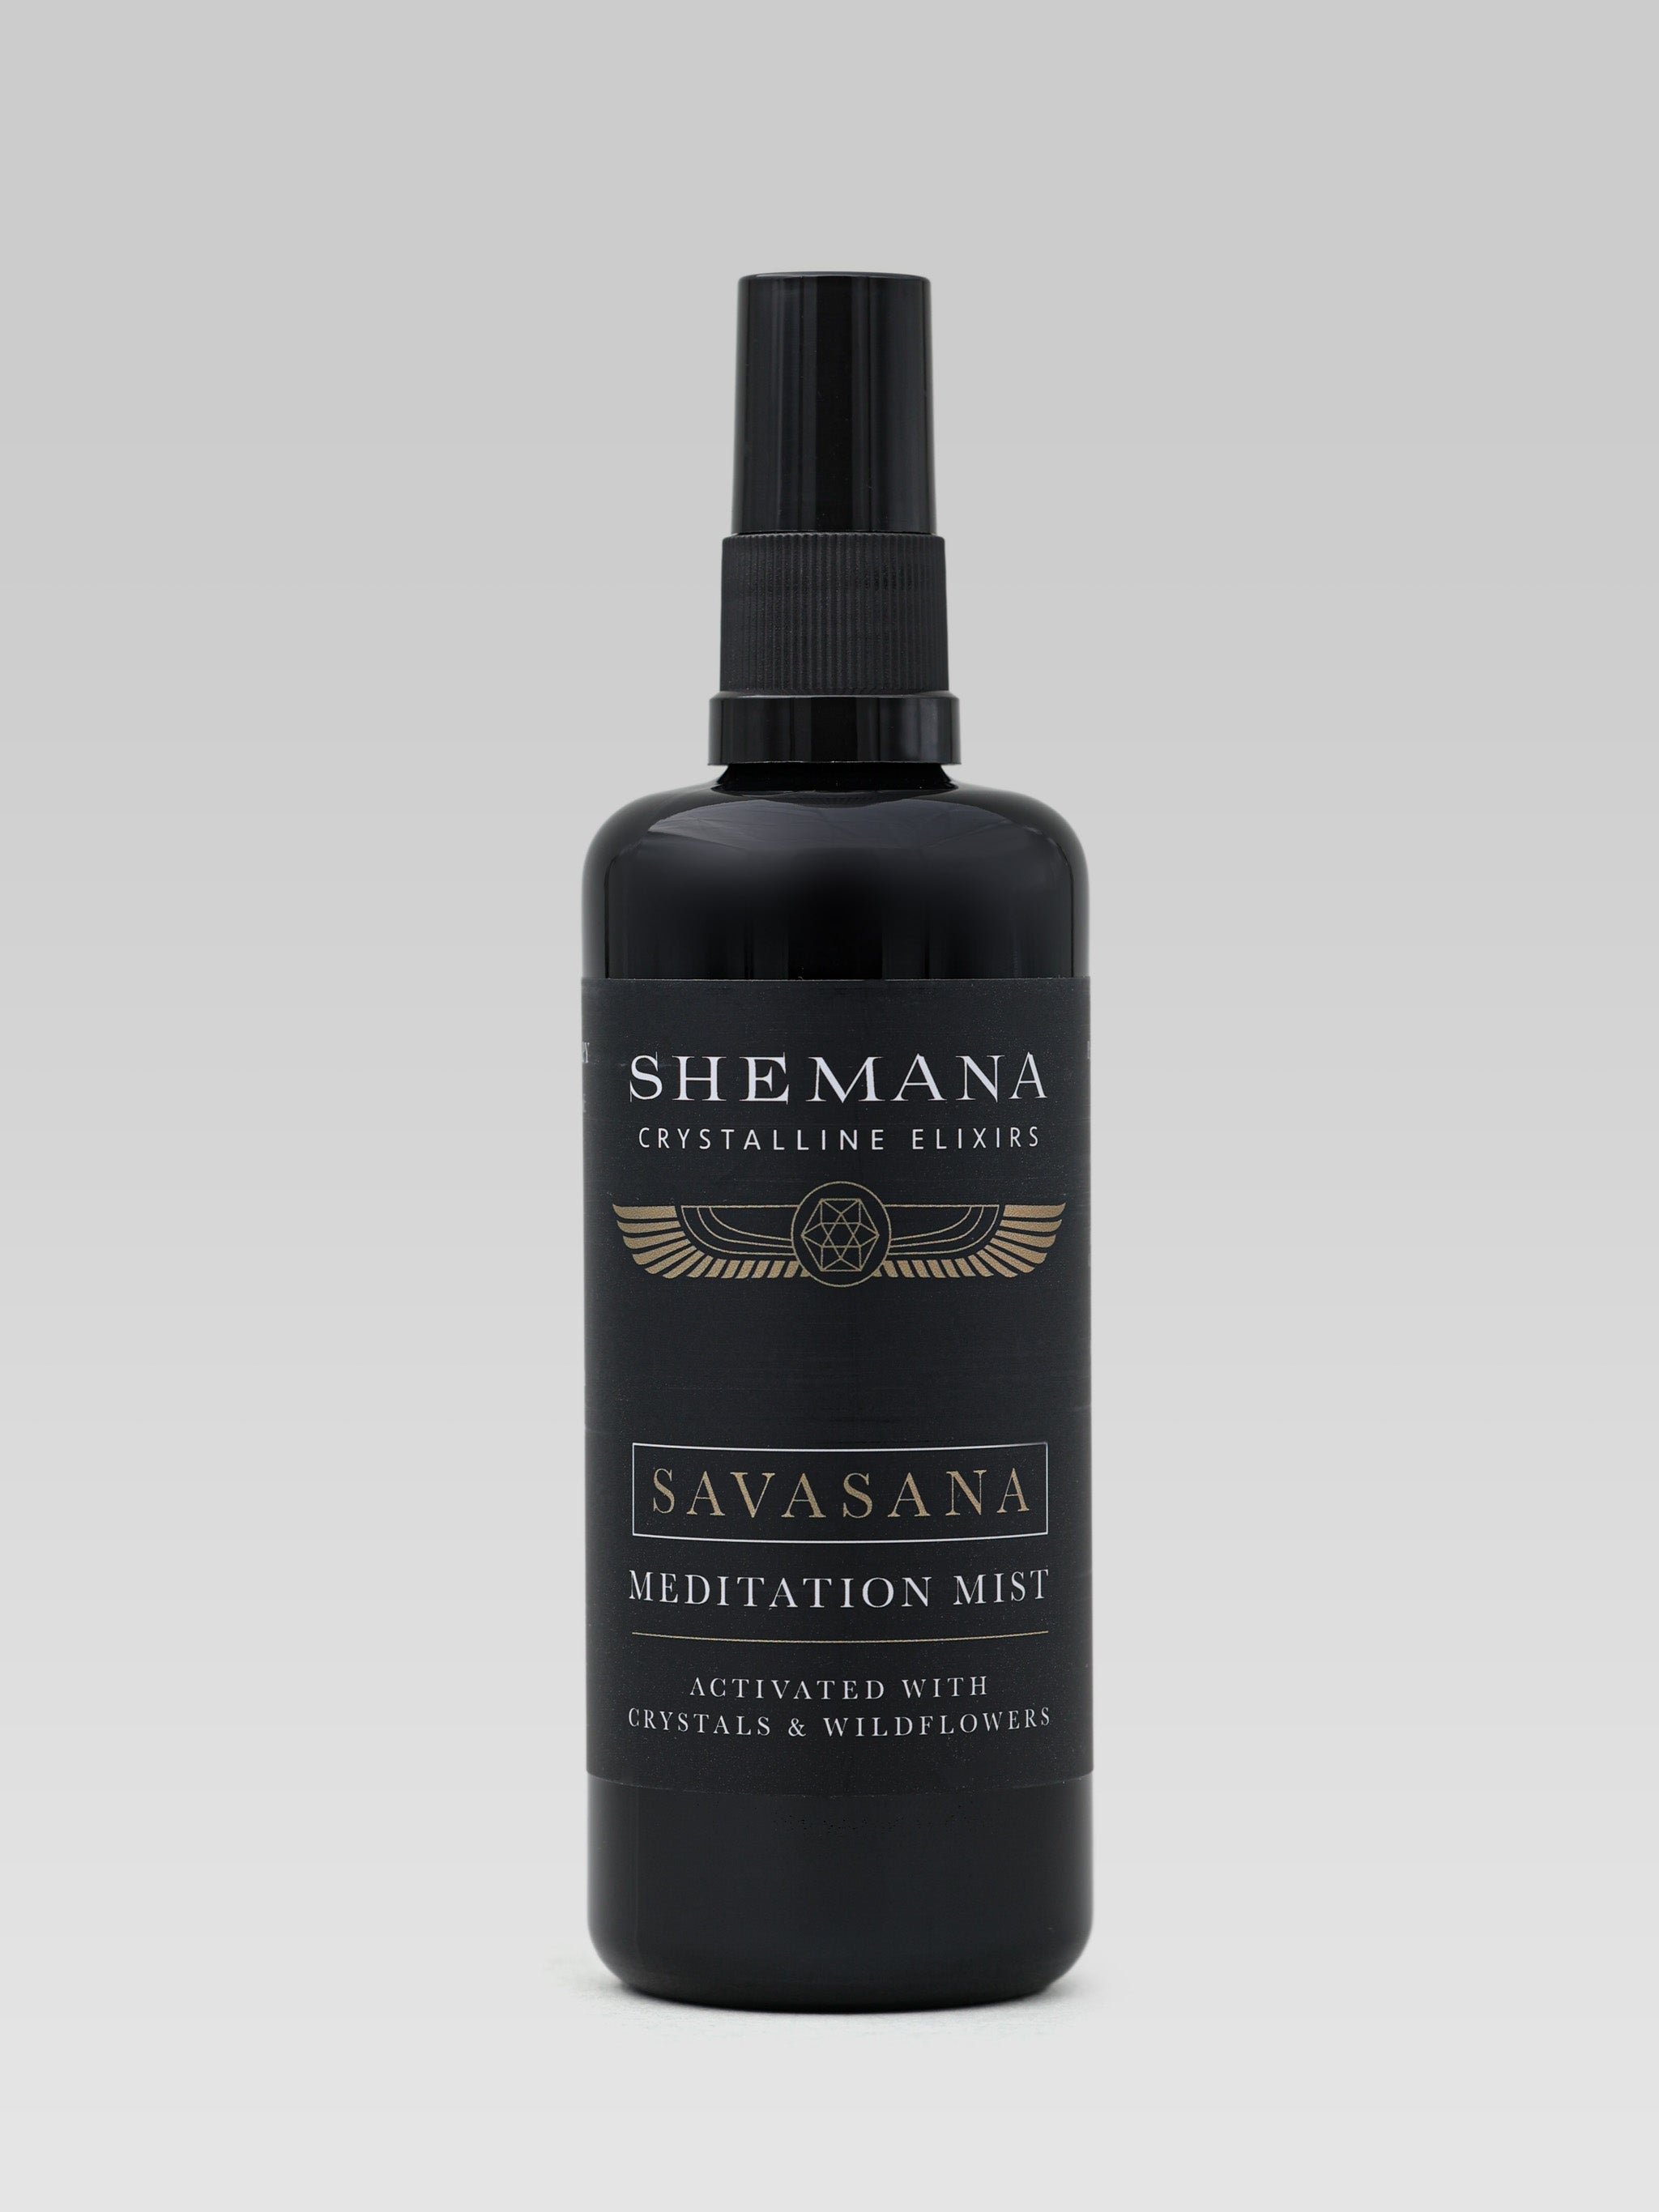 Shemana Savasana Meditation Mist product shot 